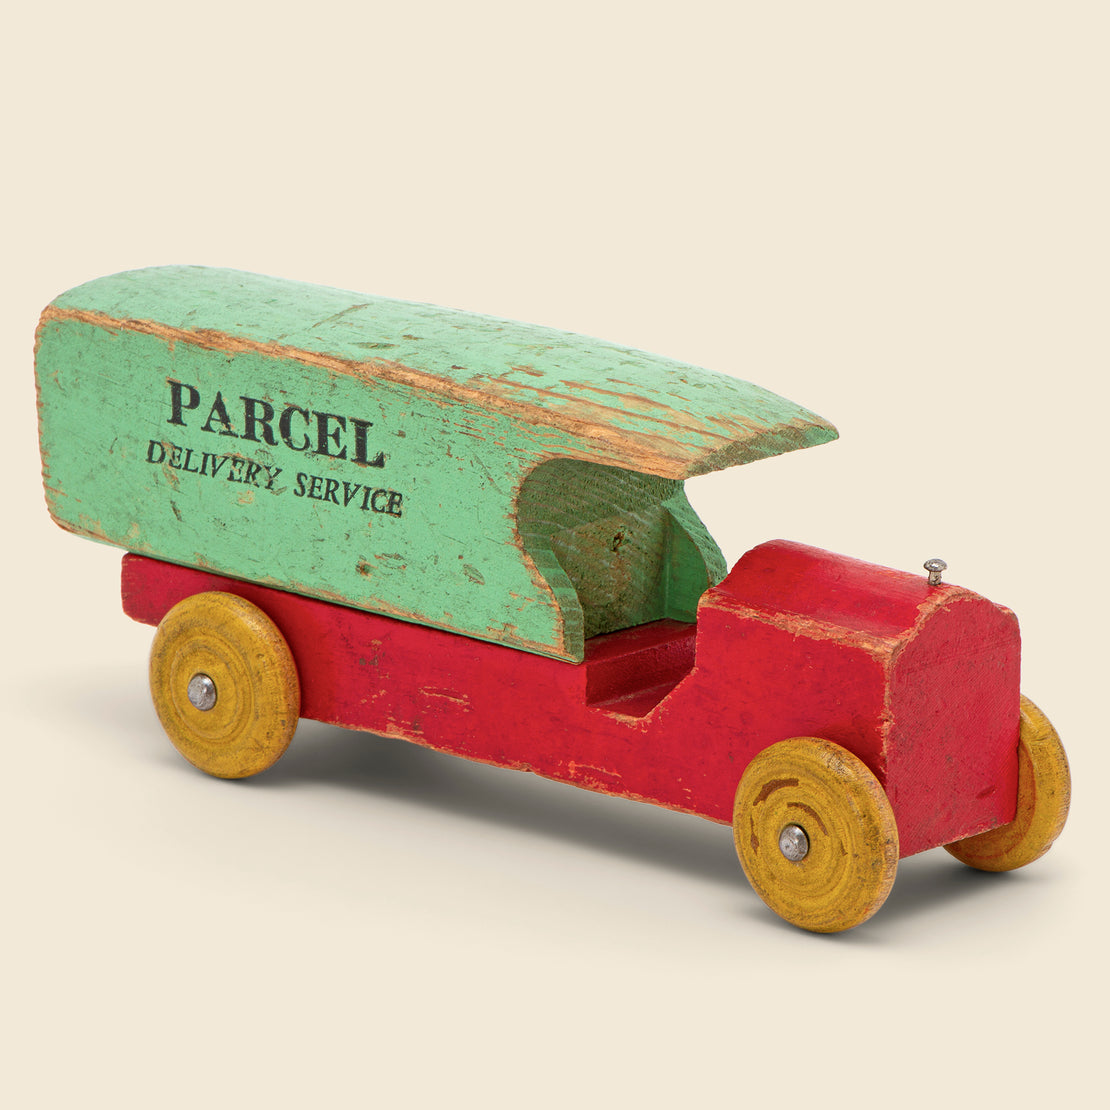 Vintage Vintage Parcel Delivery Service Toy Truck